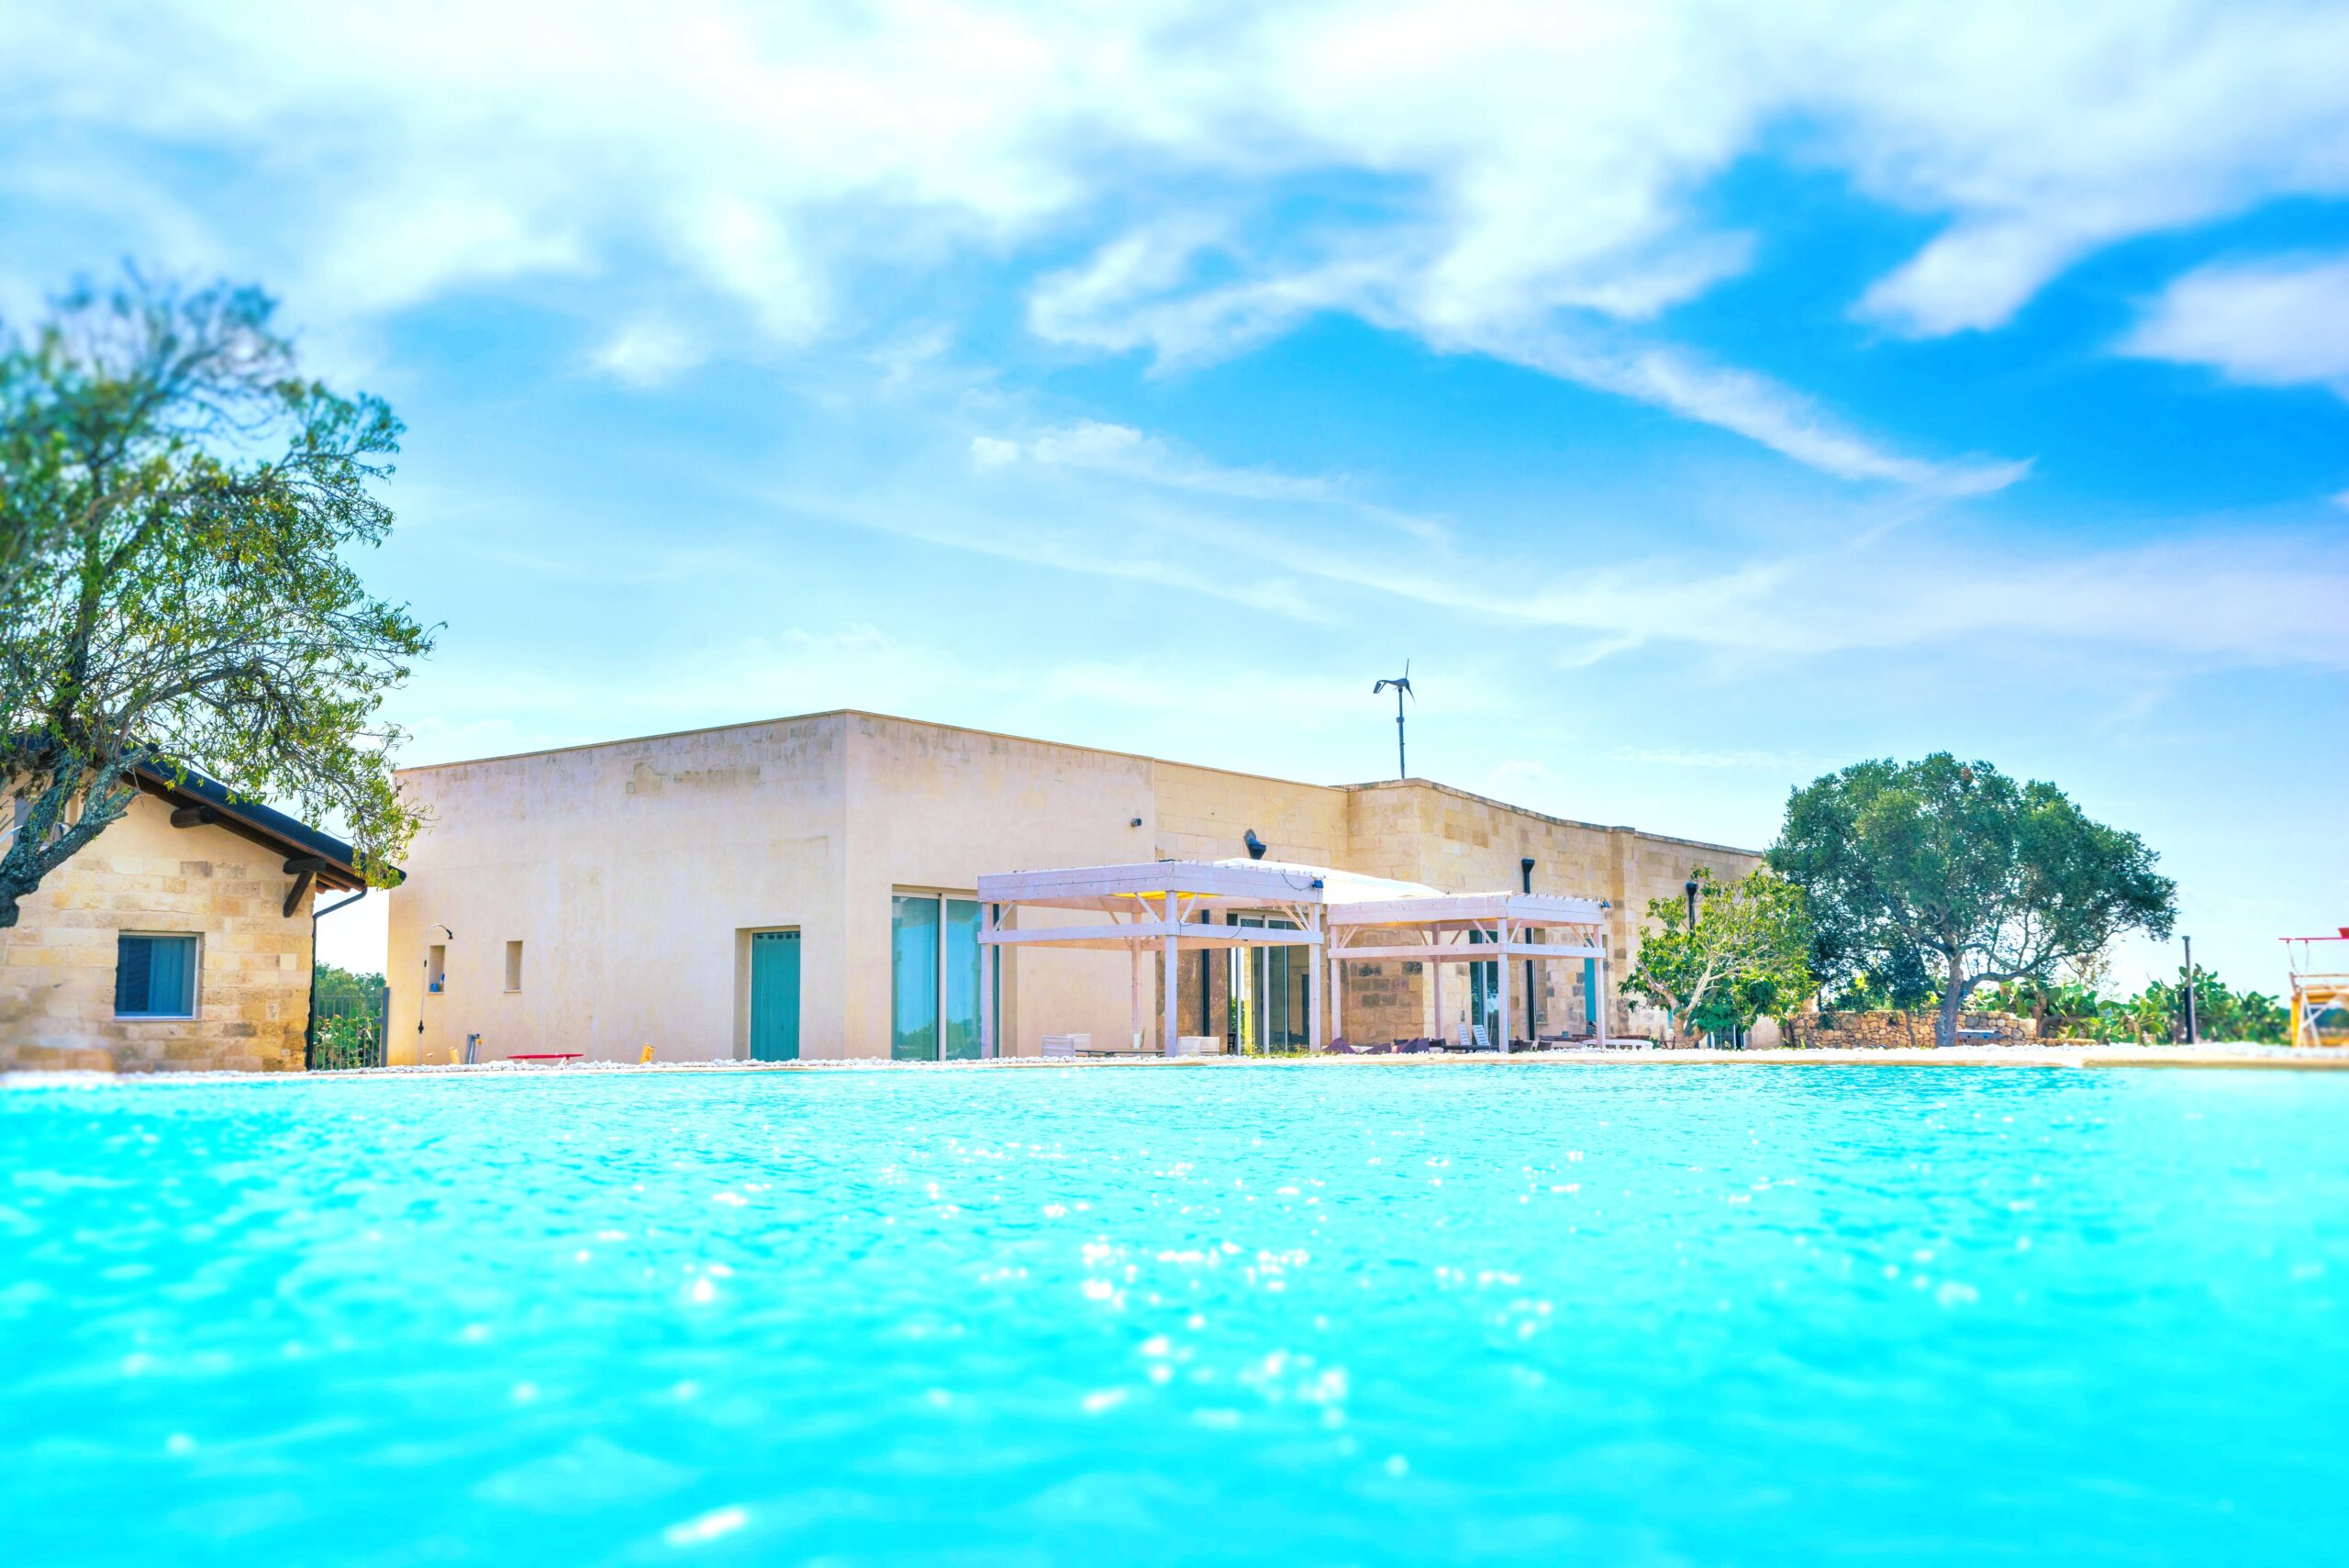 Incantevole Masseria Home Resort del 1600 con piscina – Lecce